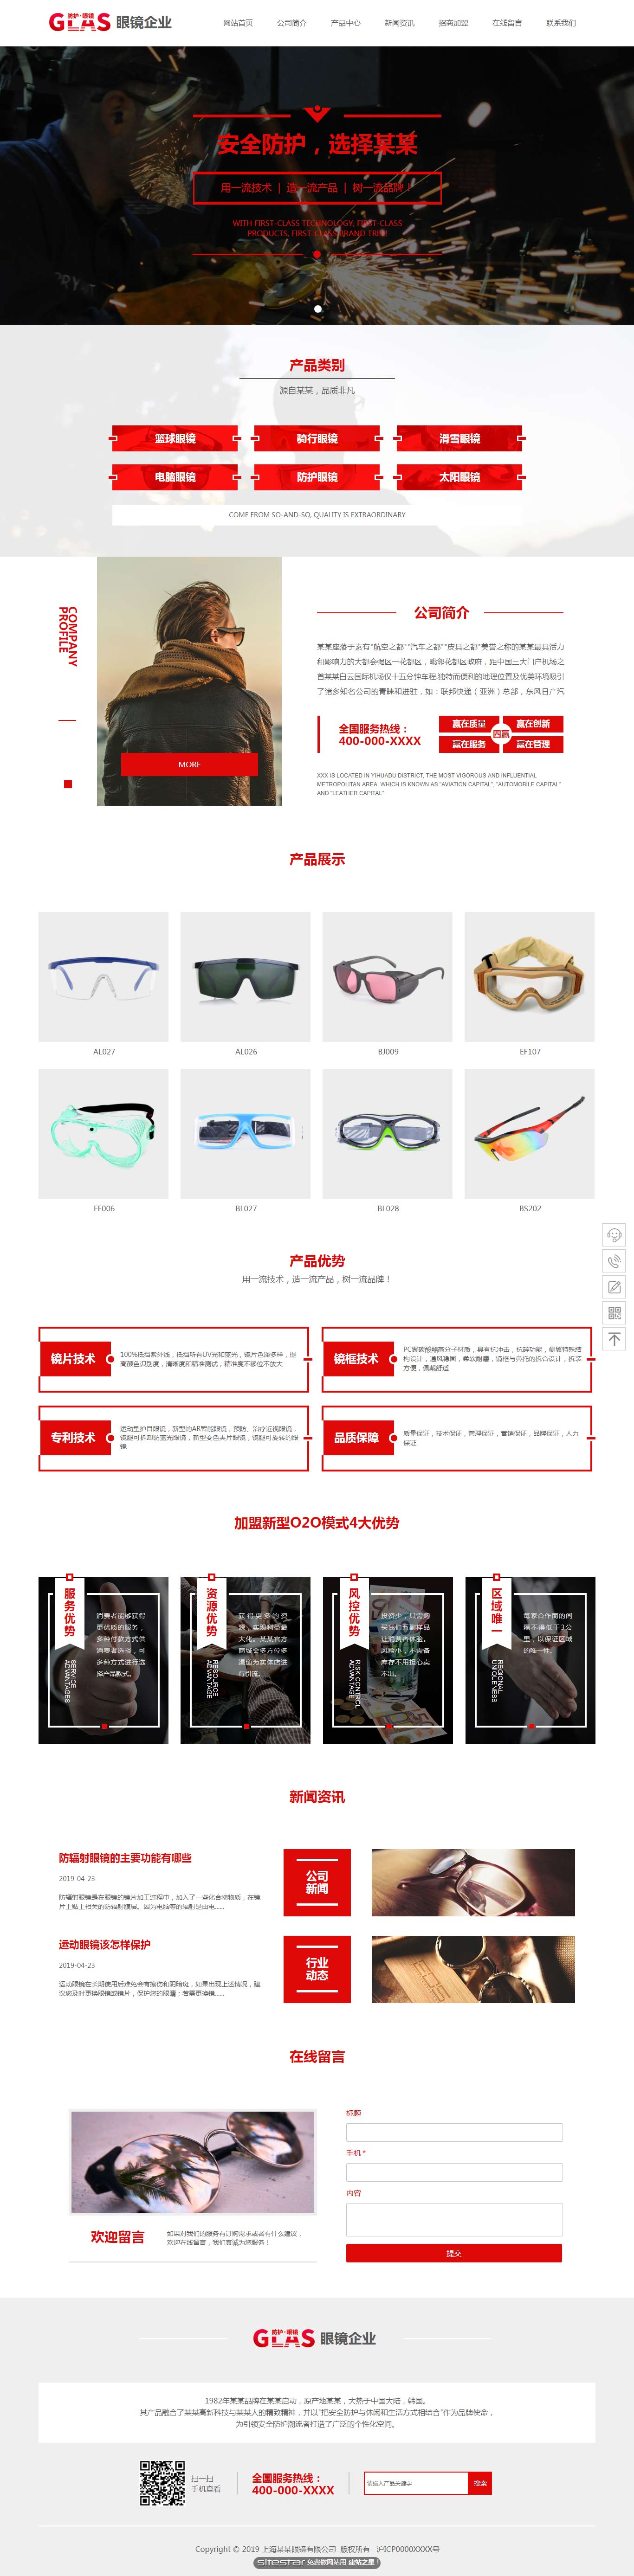 企业网站精美模板-glasses-1035222